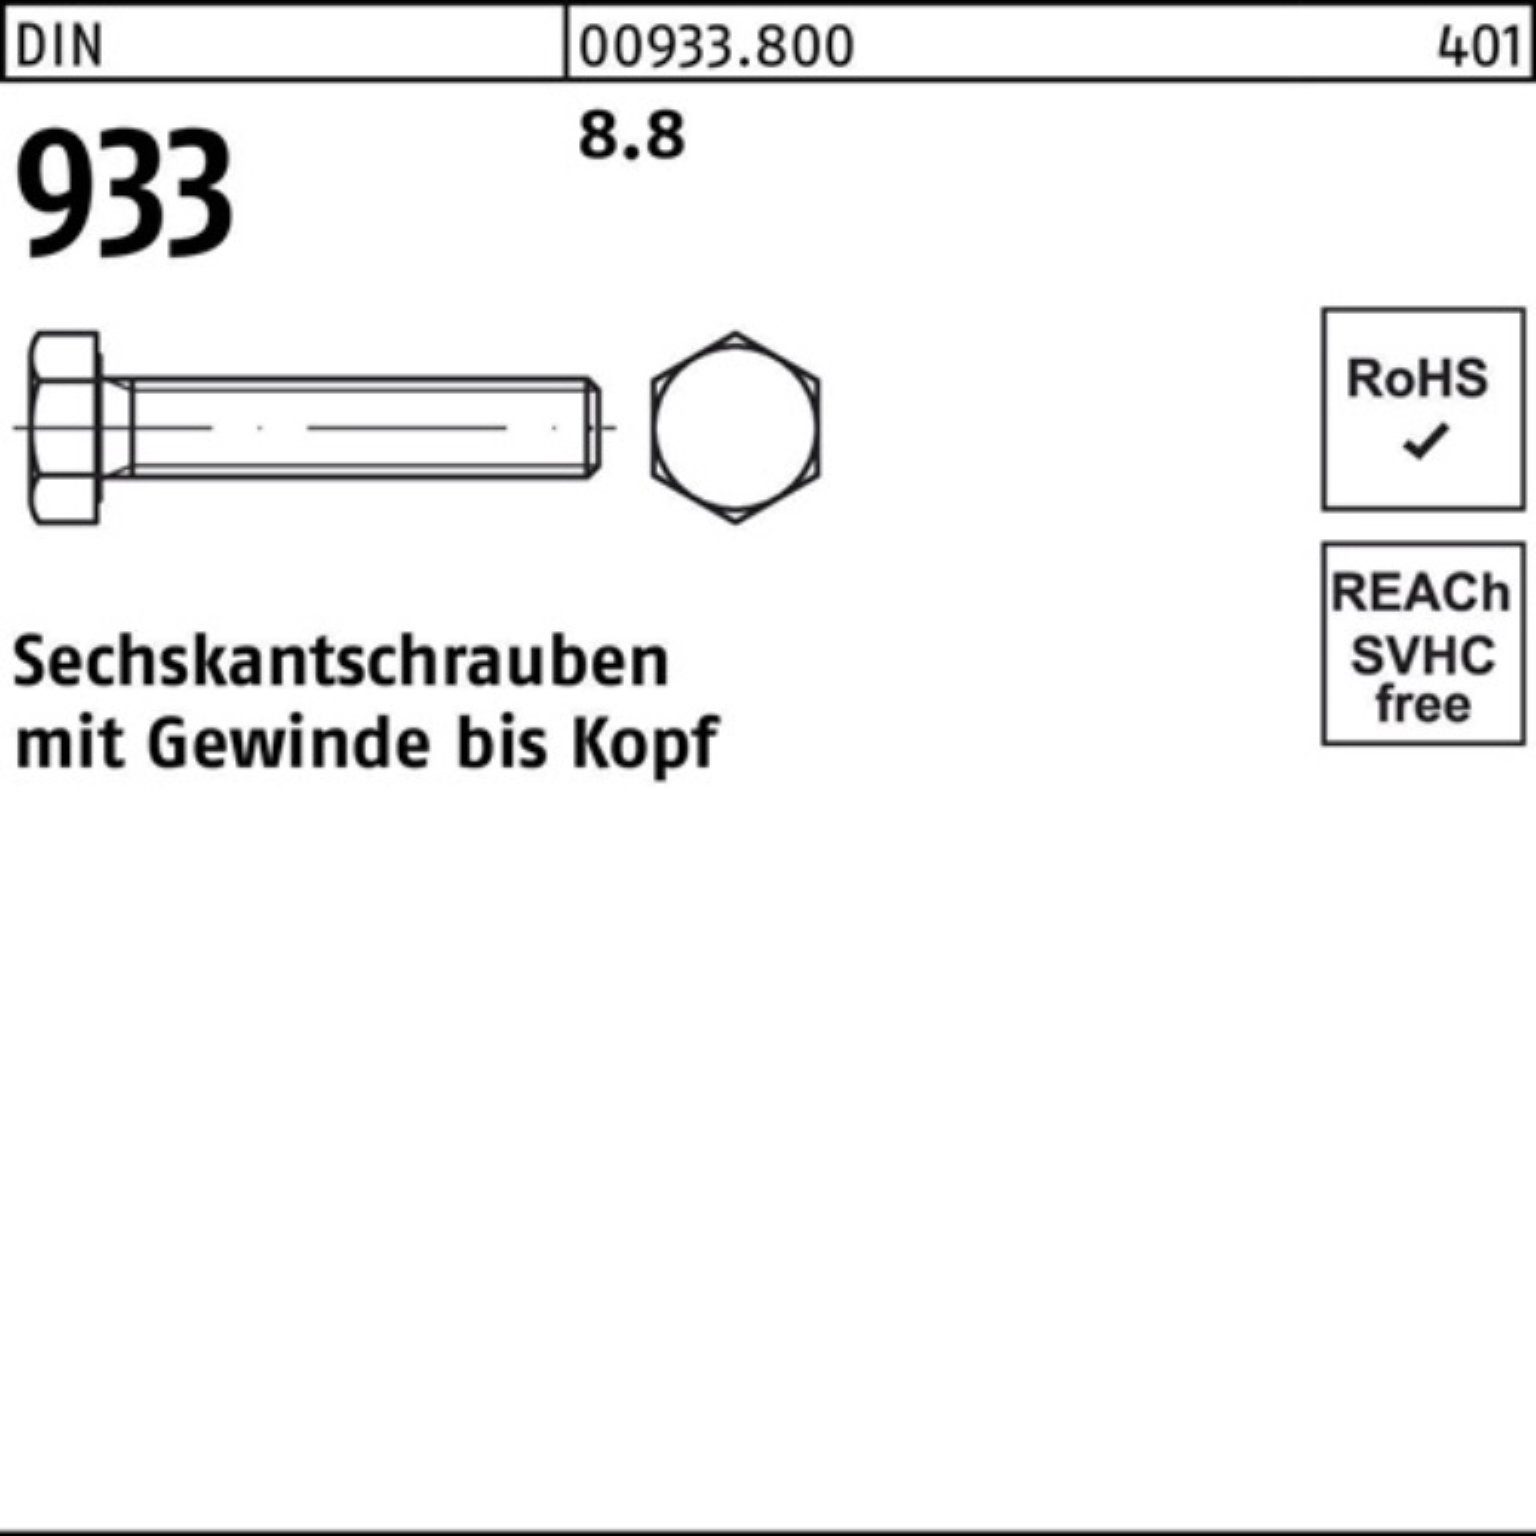 Reyher Sechskantschraube 100er Pack Sechskantschraube 140 VG 1 DIN Stück DIN 933 933 8.8 M33x